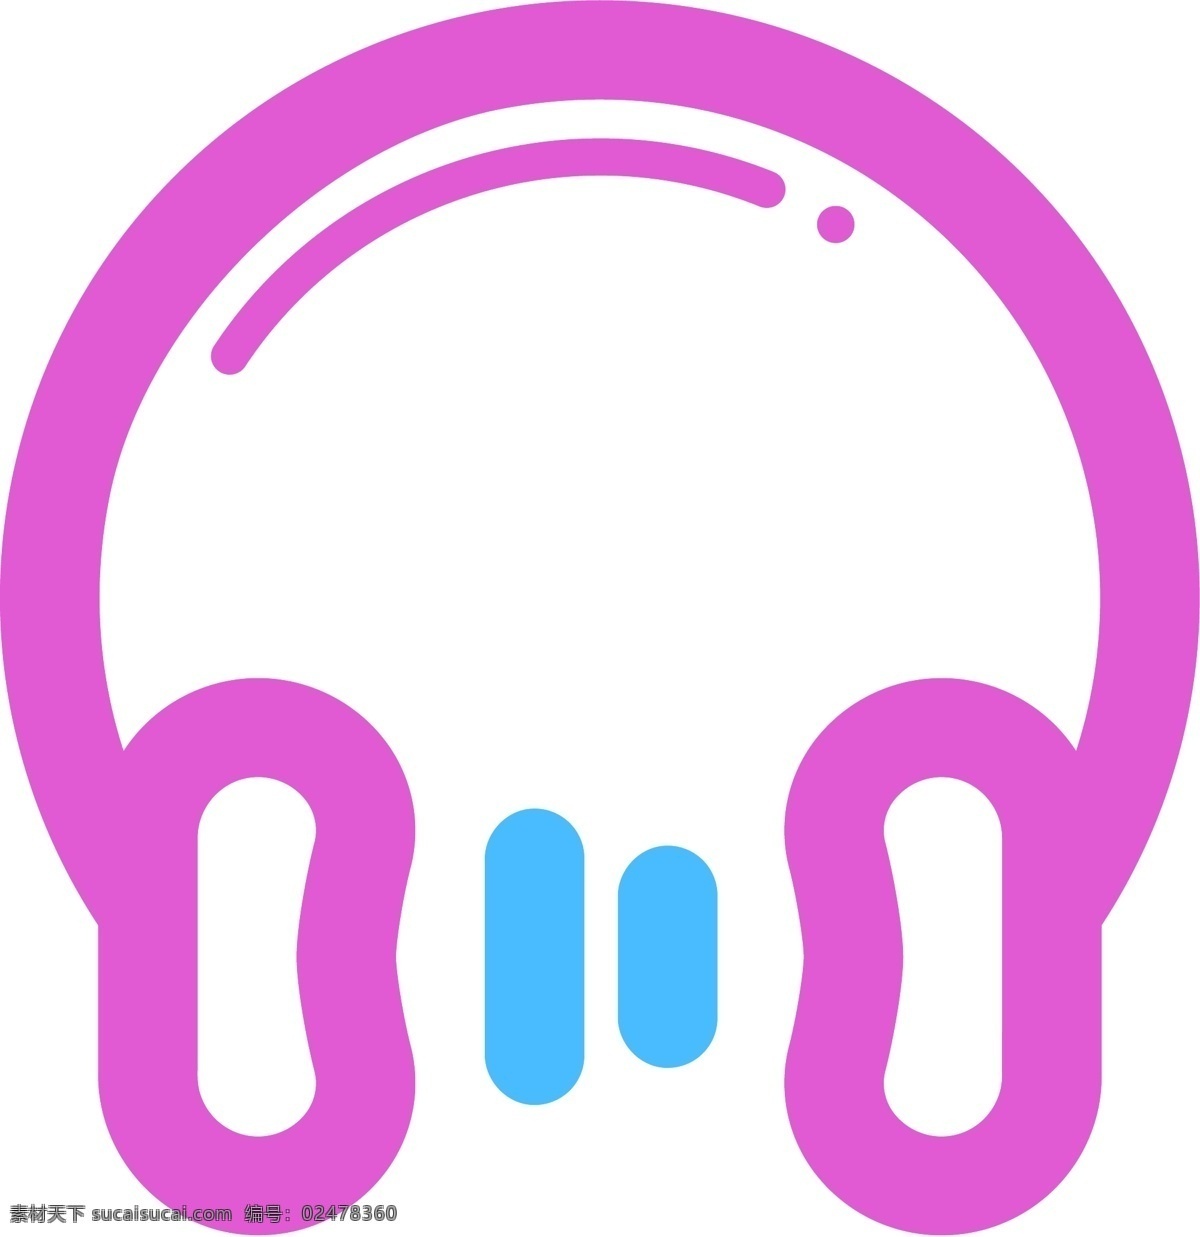 音乐素材 音乐 音乐元素 耳机 矢量耳机 卡通耳机 音乐卡通 矢量音乐